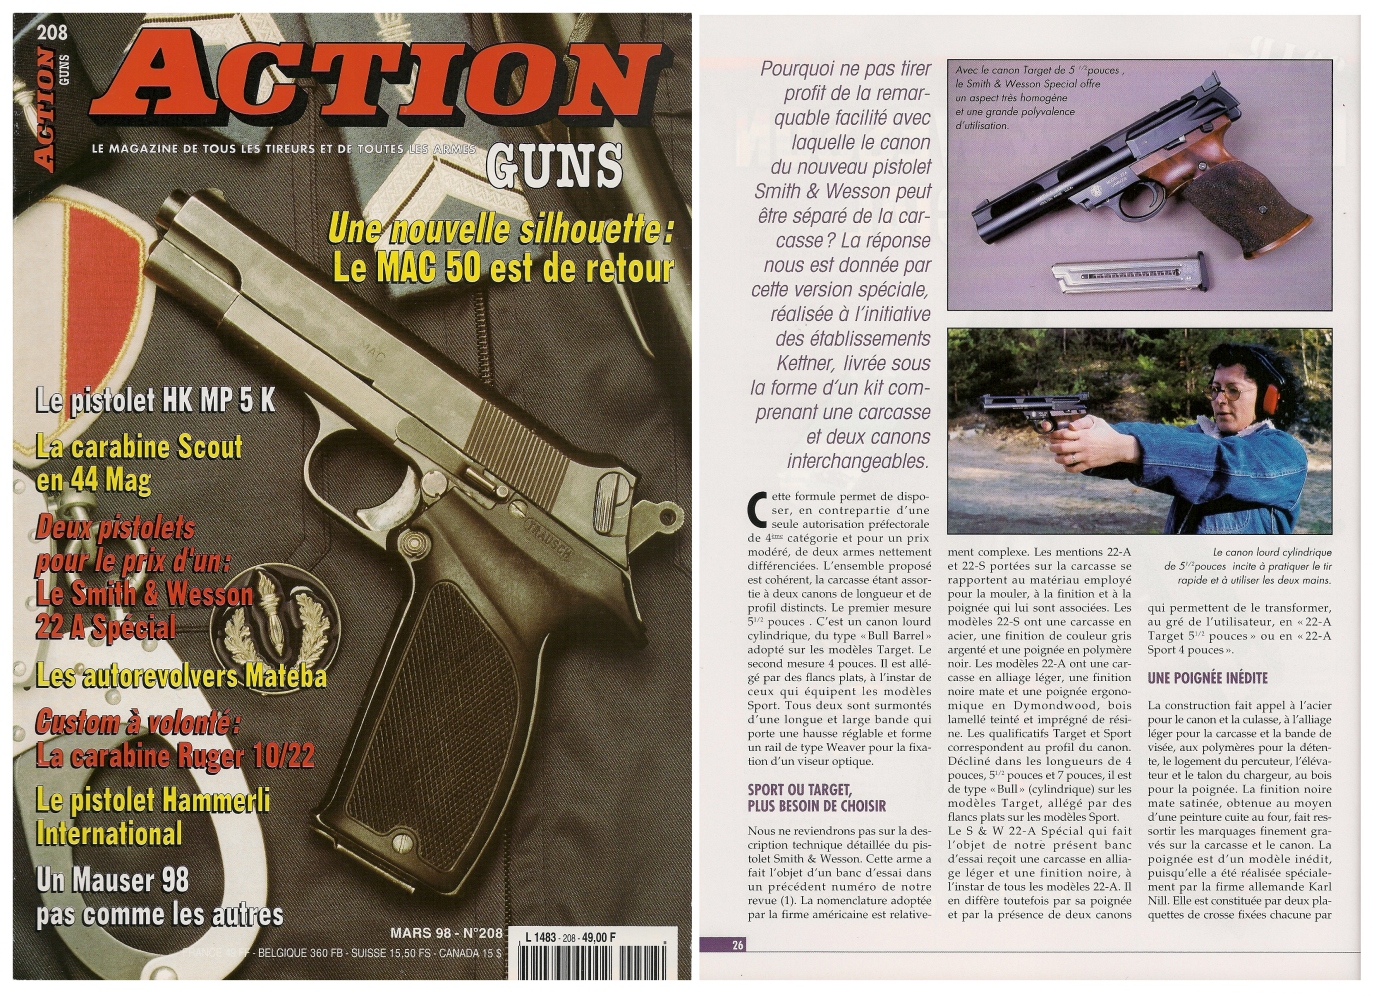 Le banc d'essai du pistolet Smith & Wesson 22-A Spécial a été publié sur 5 pages dans le magazine Action Guns n°208 (mars 1998). 